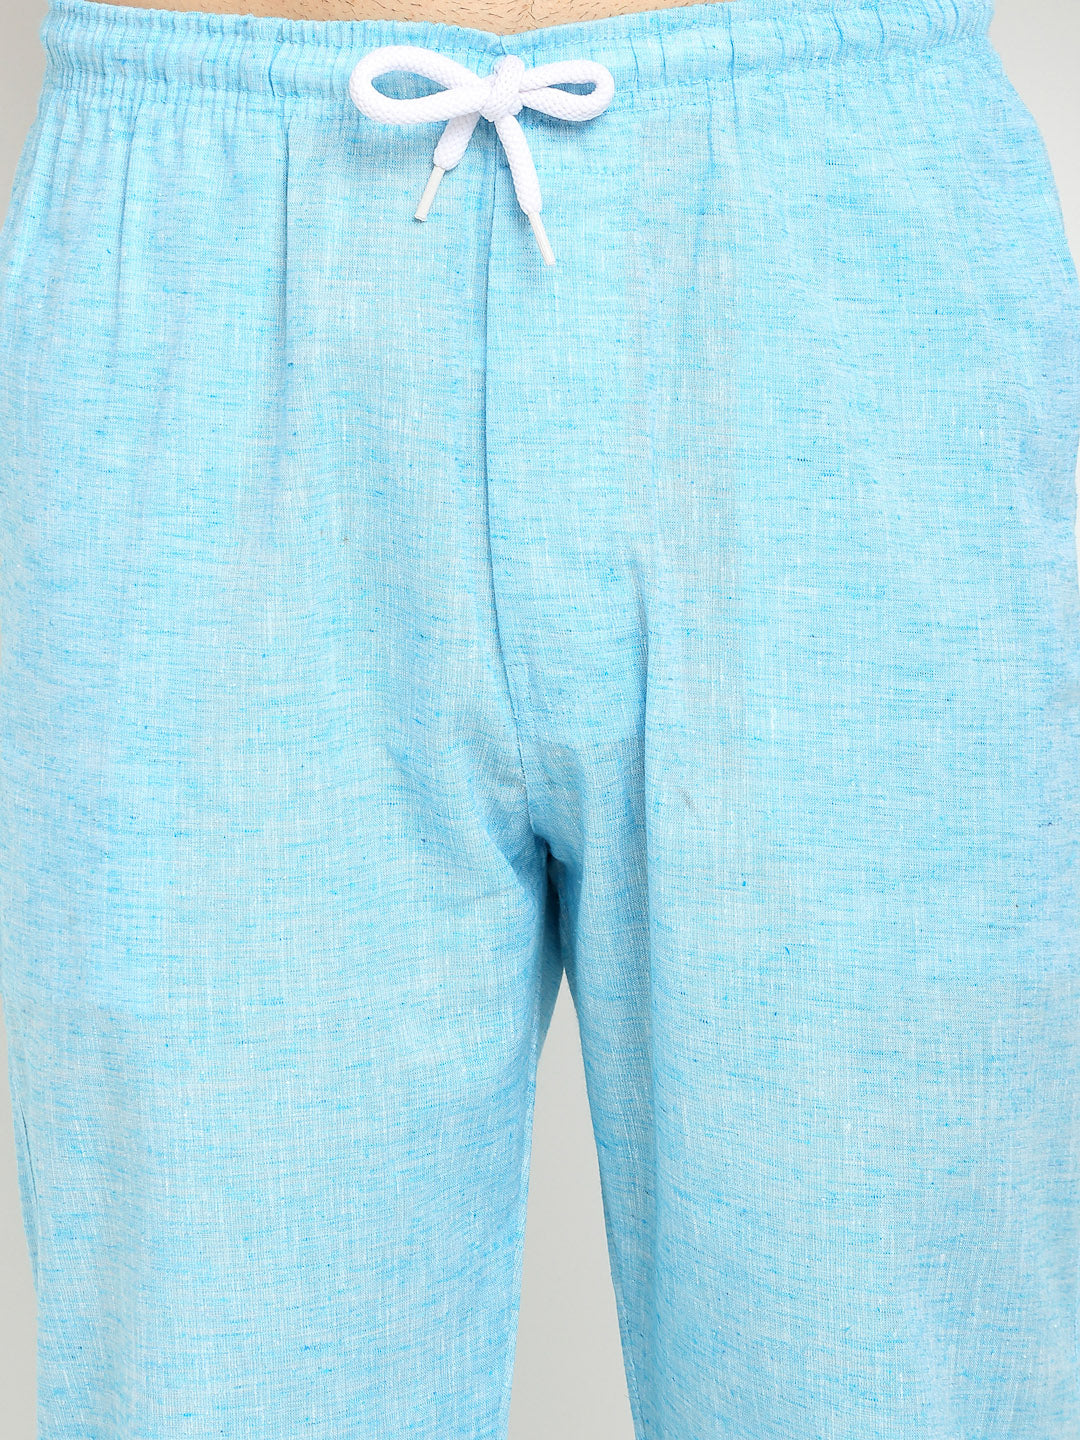 Men's Blue Linen Cotton Track Pants ( JOG 021Sky ) - Jainish